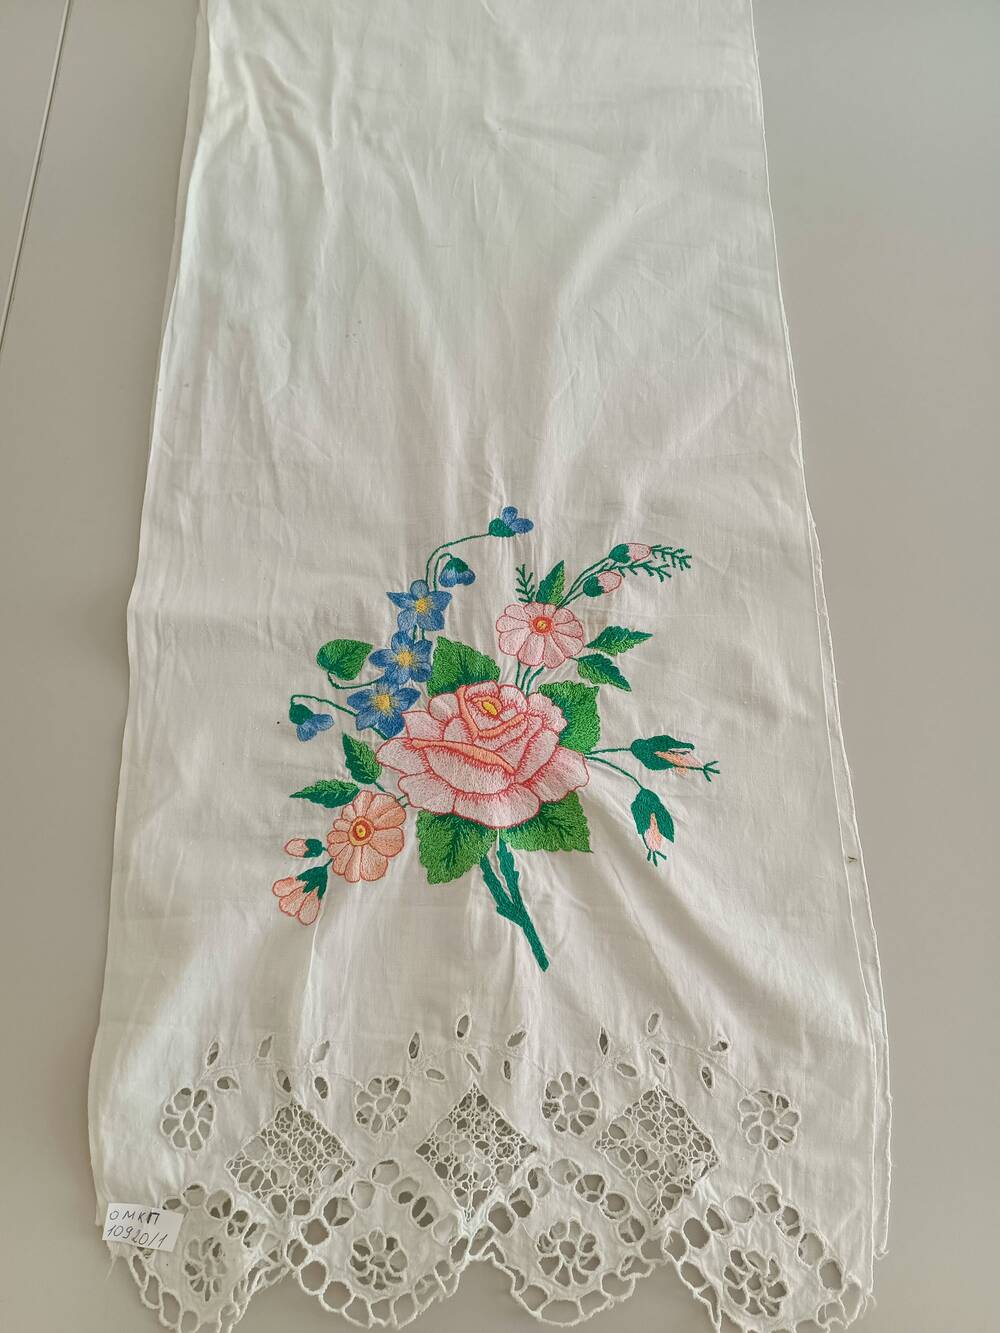 Рушник с прошвой по краям, вышивка цветочный орнамент